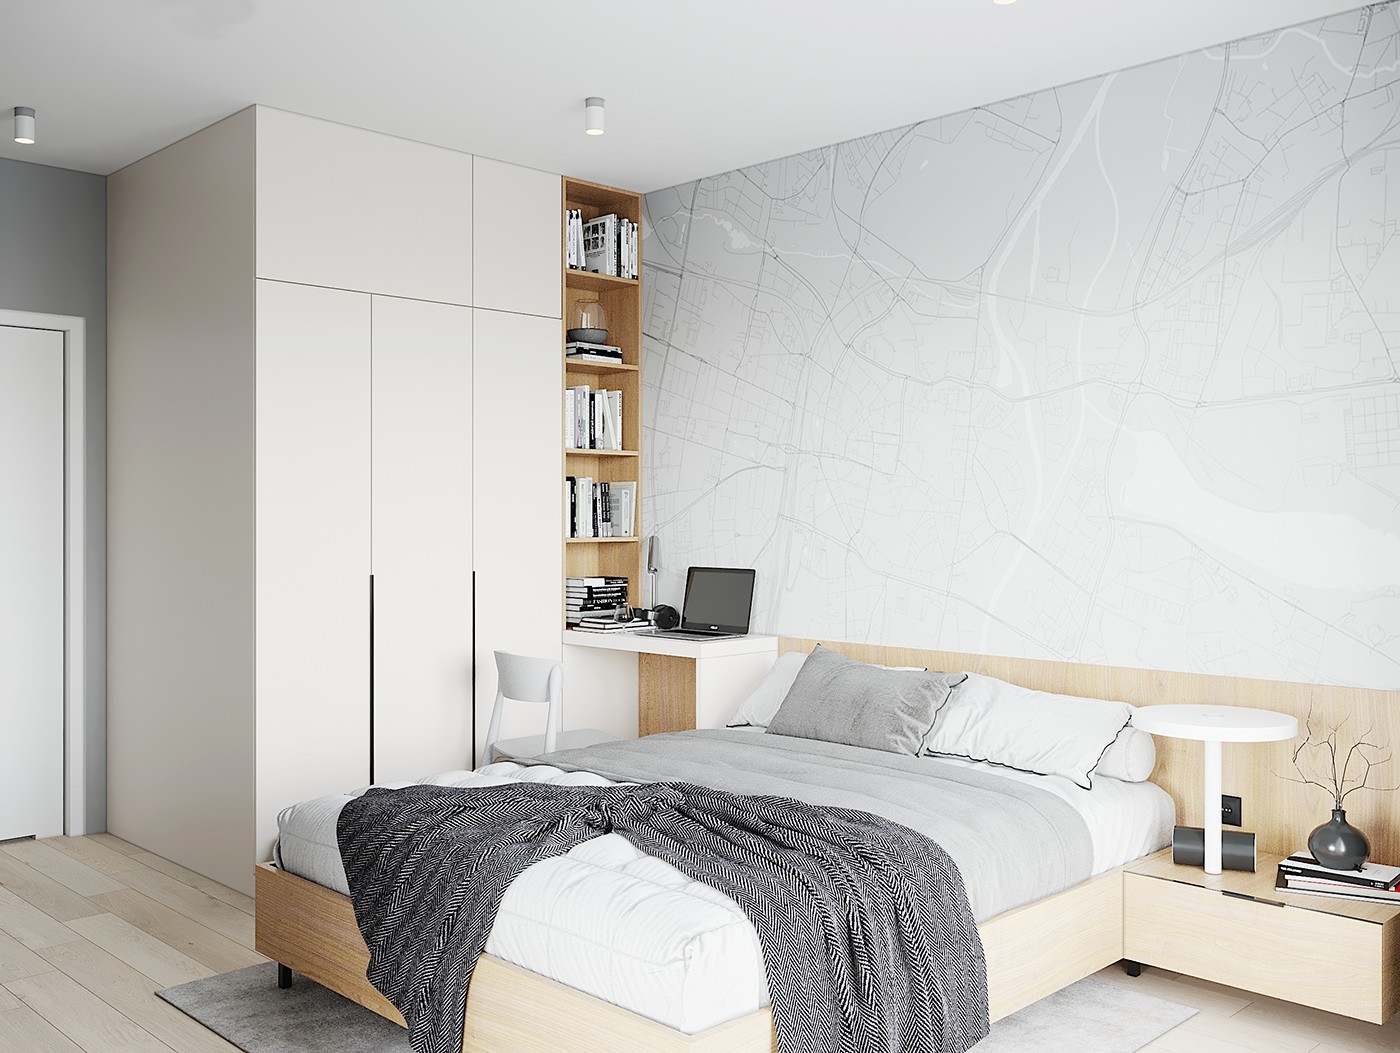 Thiết kế nội thất phòng ngủ: Phong cách Scandinavian (Bắc Âu)